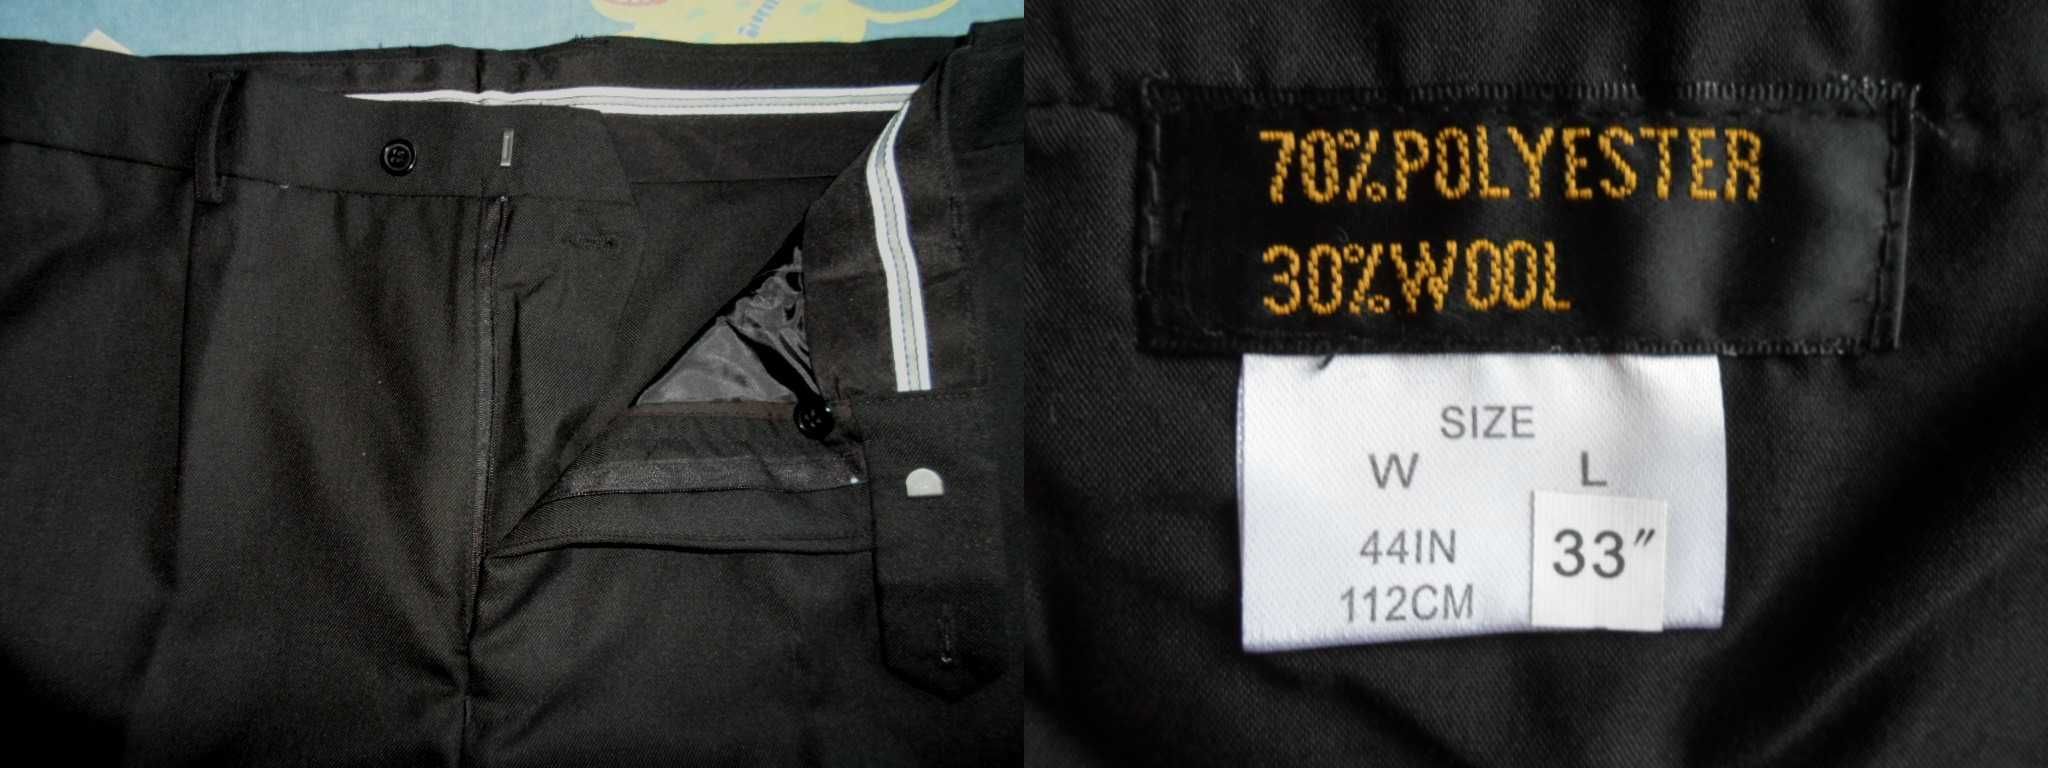 брюки новые мужские большой размер W-44/46 пояс 120 114-122 112-118 см